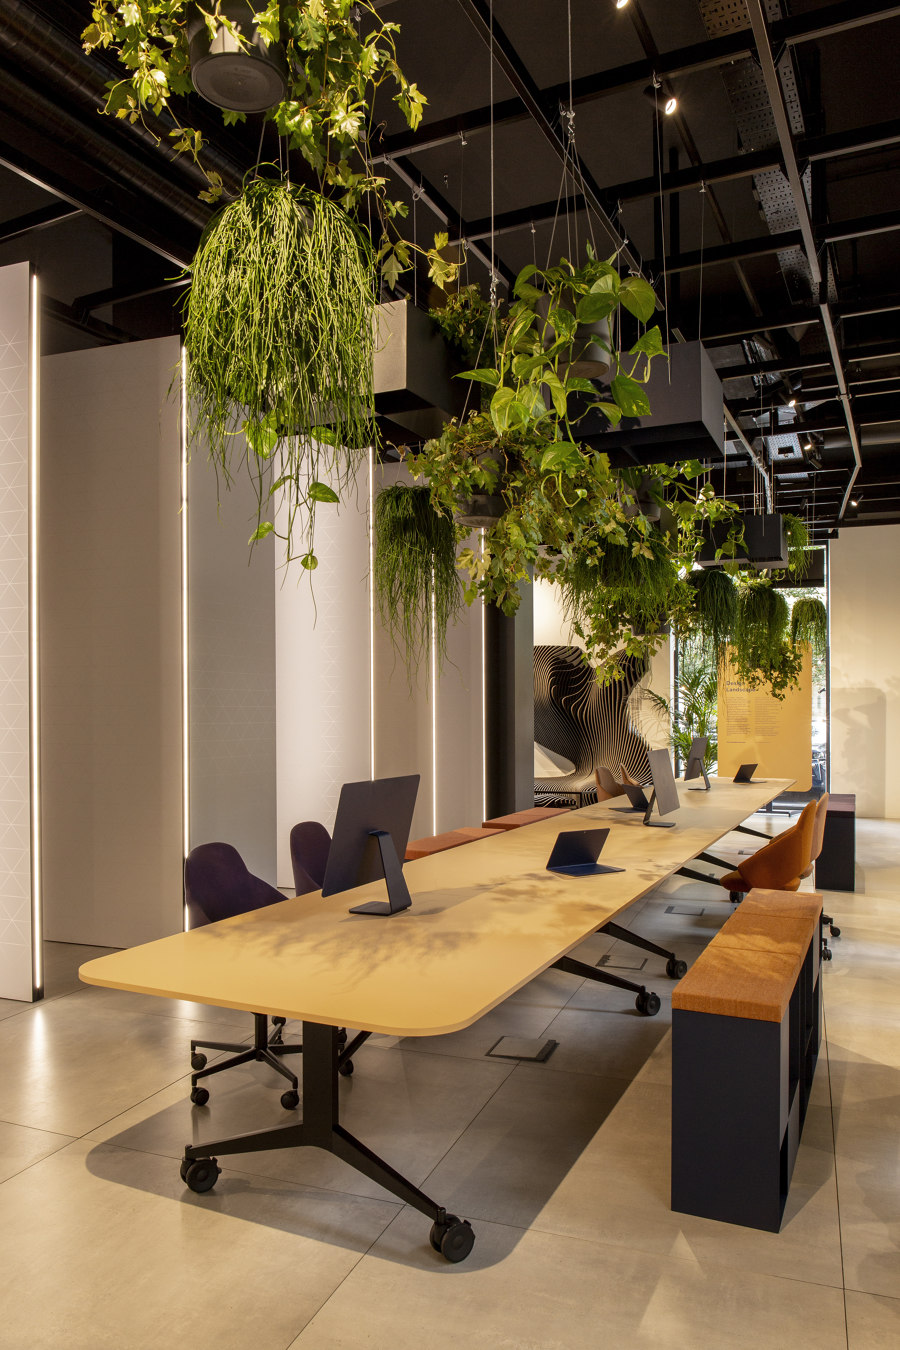 Mara’s Milan manifesto: designing furniture that makes us feel | Novedades